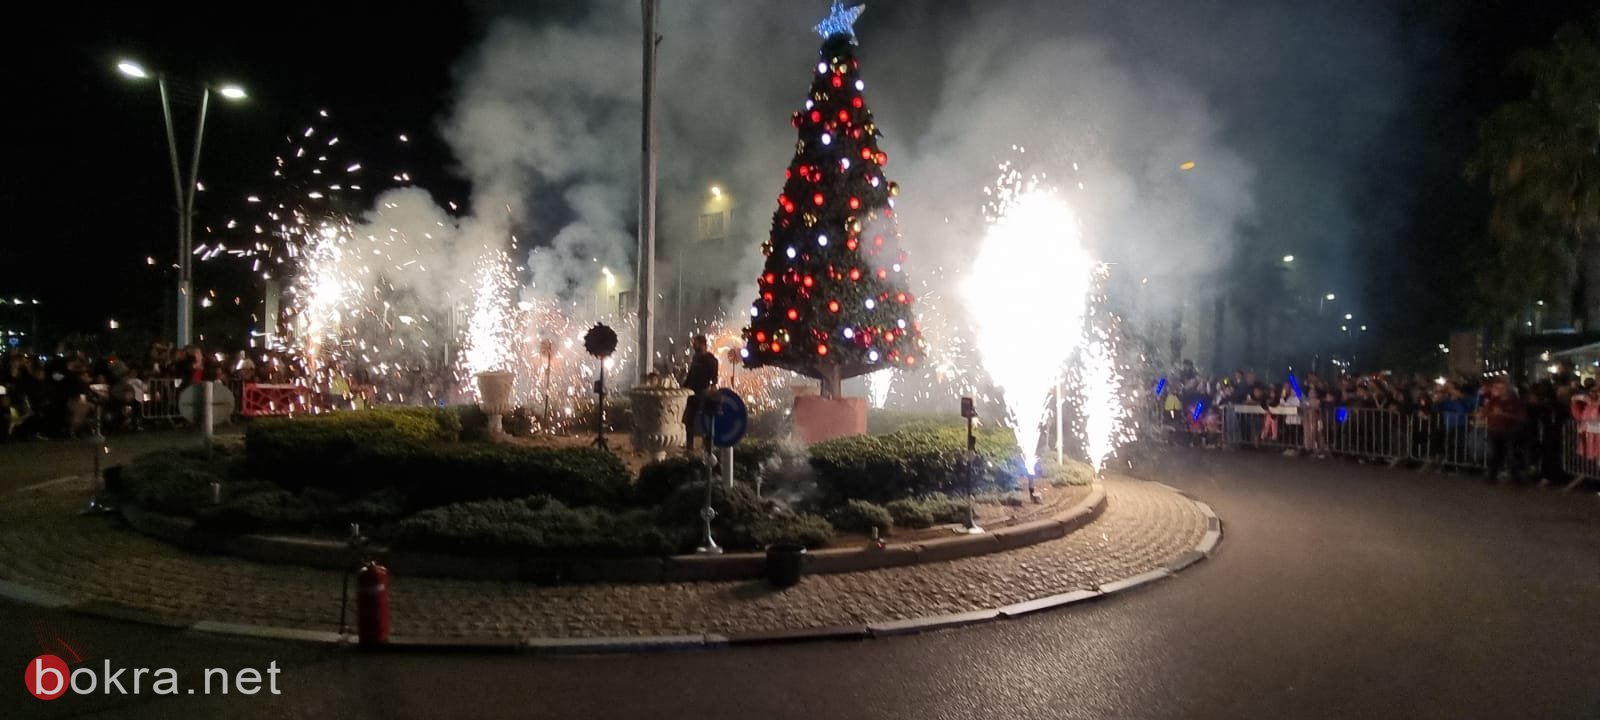 صور رائعة من احتفال عكا بإضاءة شجرة الميلاد-1